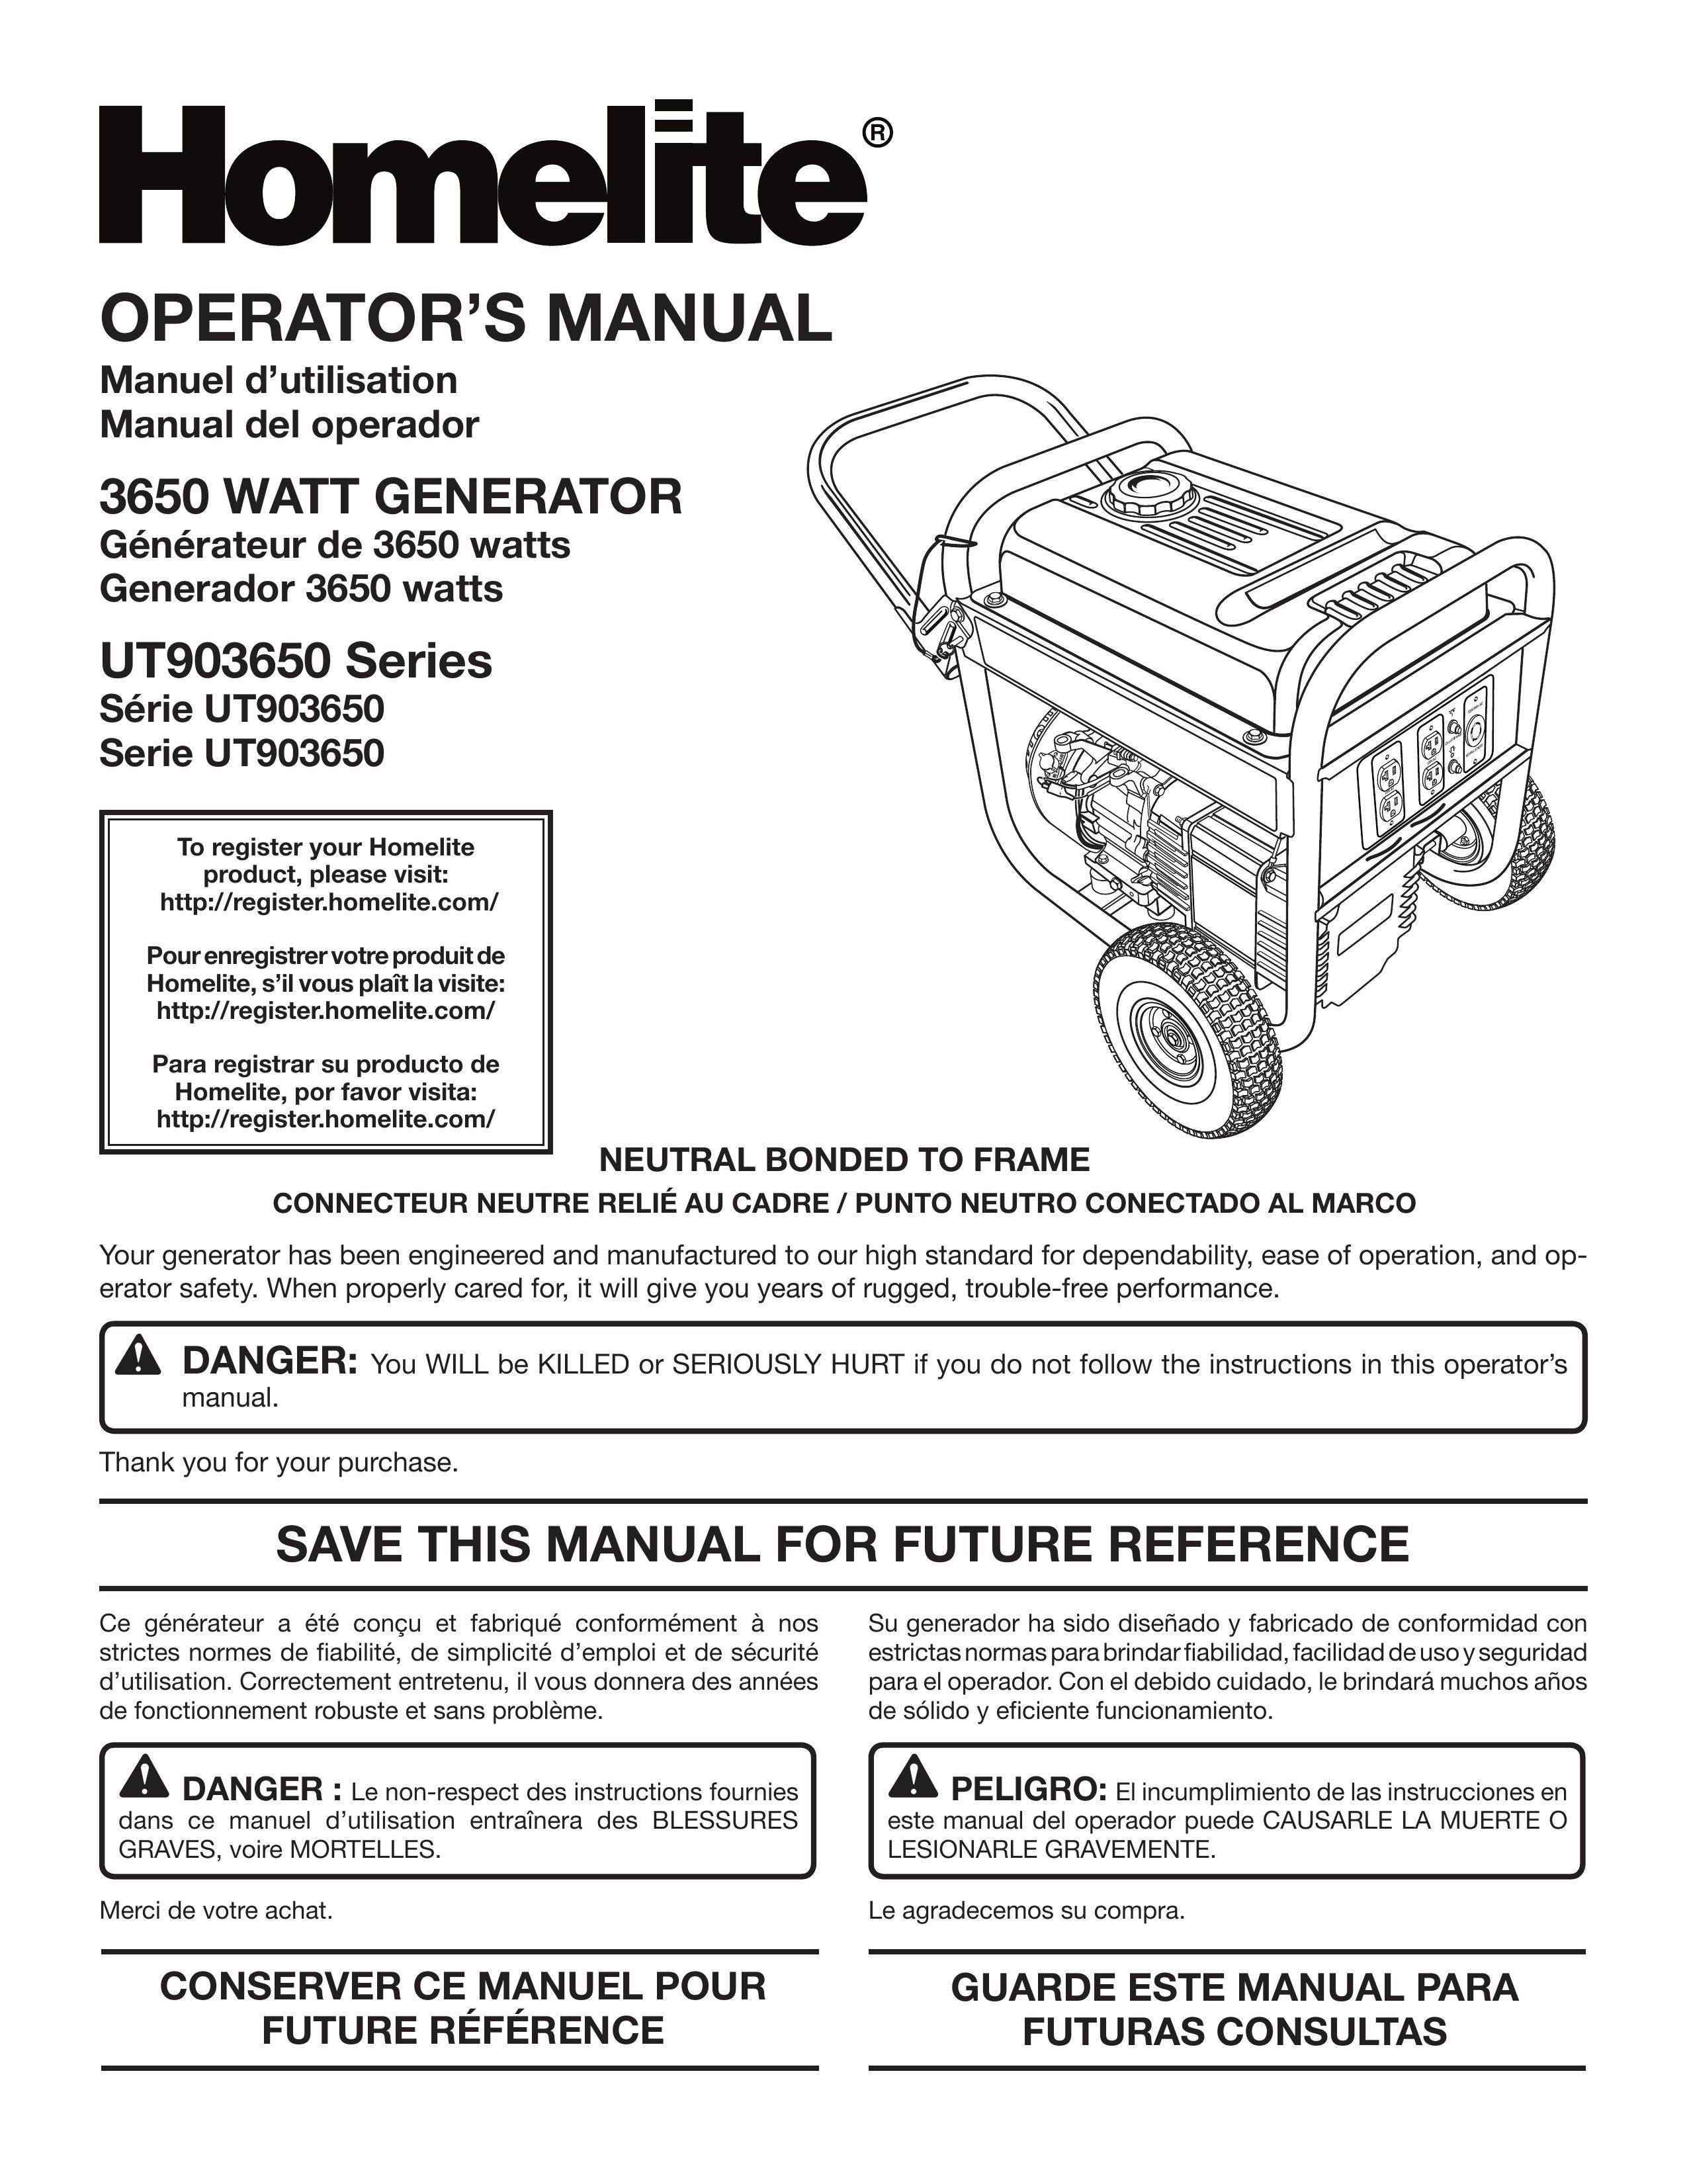 Homelite UT903650 Portable Generator User Manual